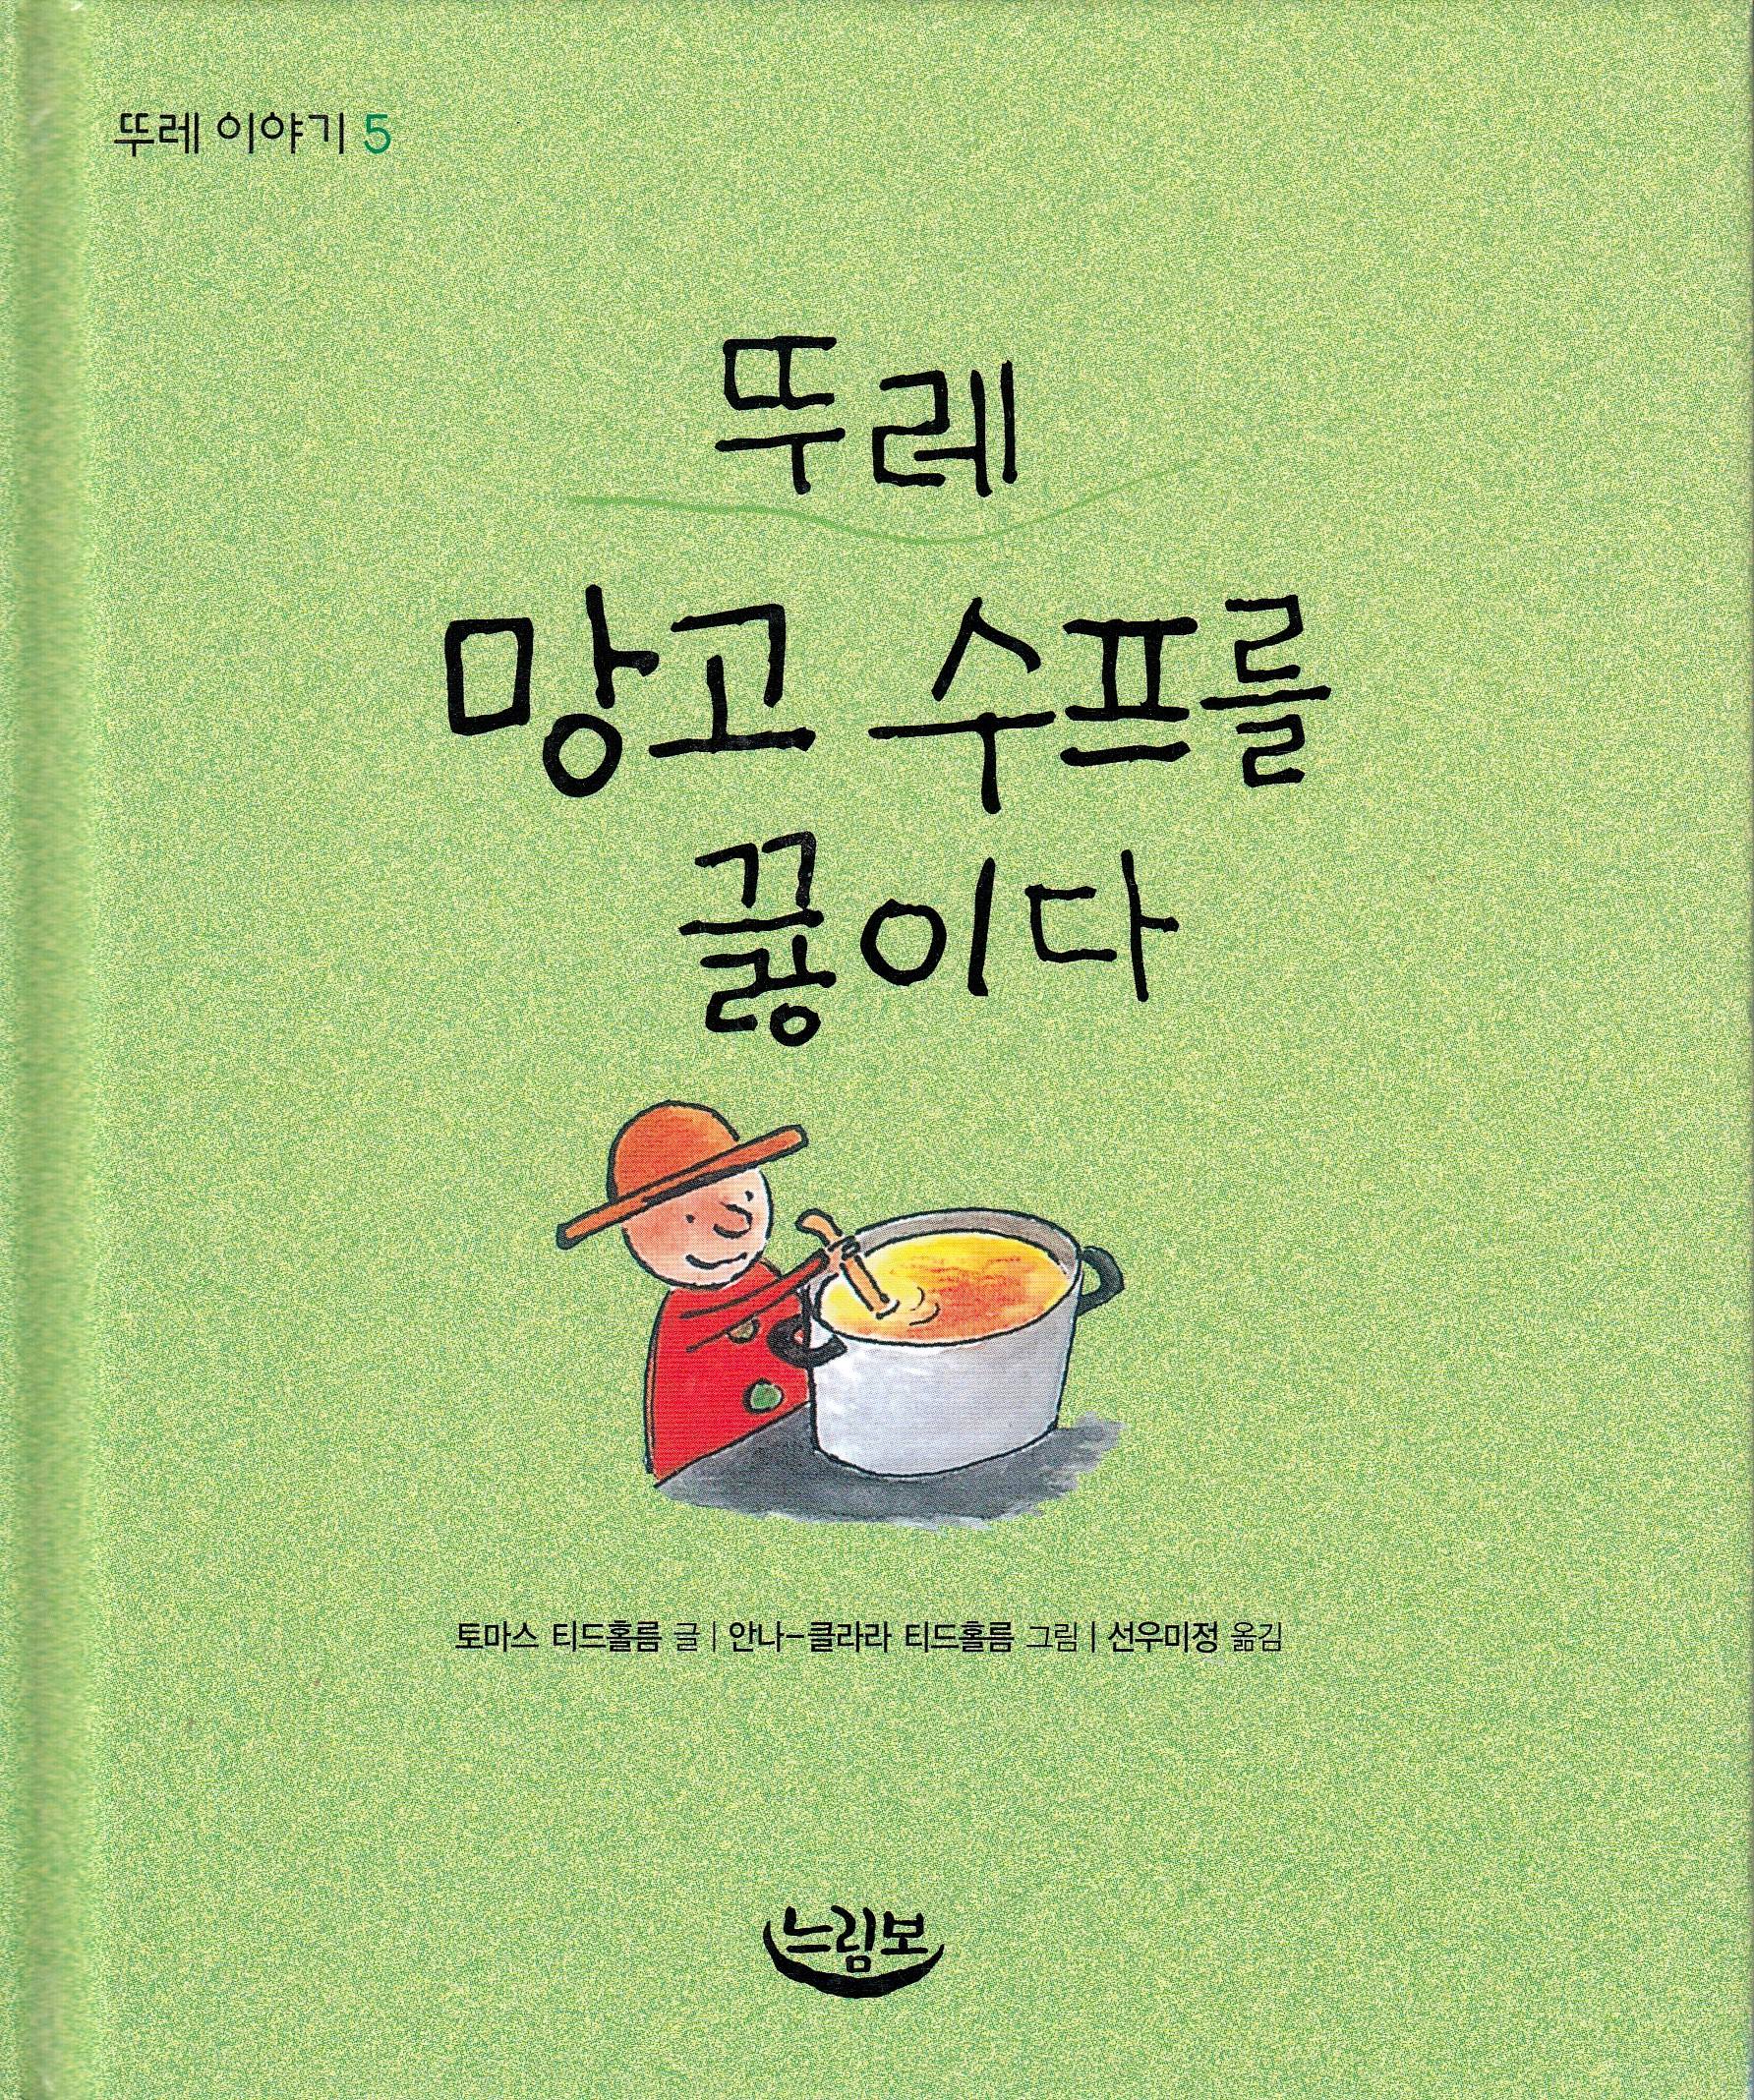 Ture kokar soppa (Koreanska)